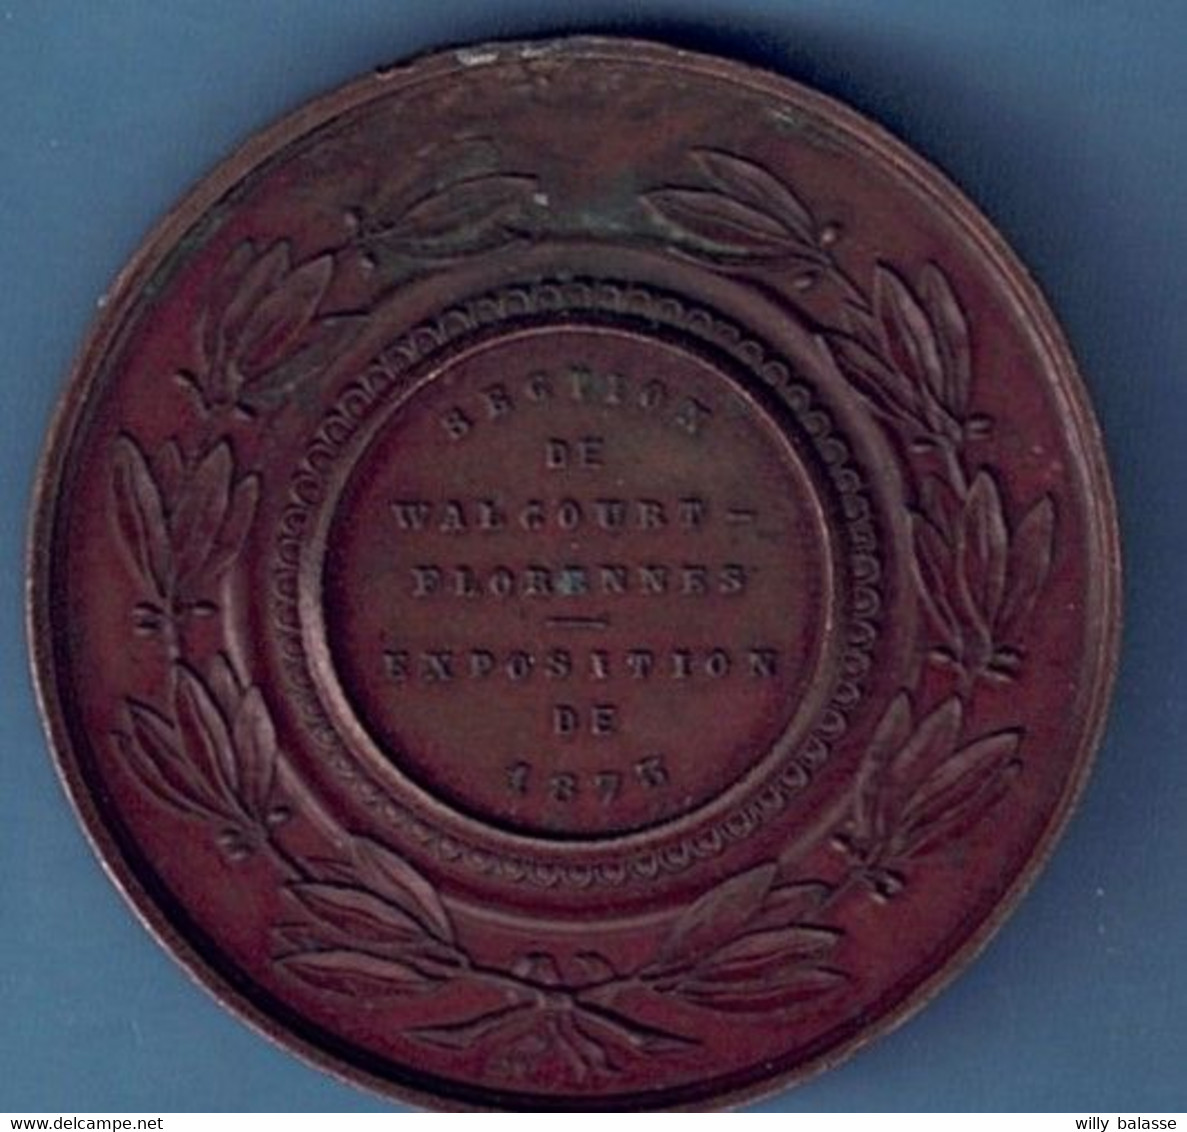 Médaille Léopold II Section De Walcourt / Florennes Exposition De 1873 - Professionnels / De Société